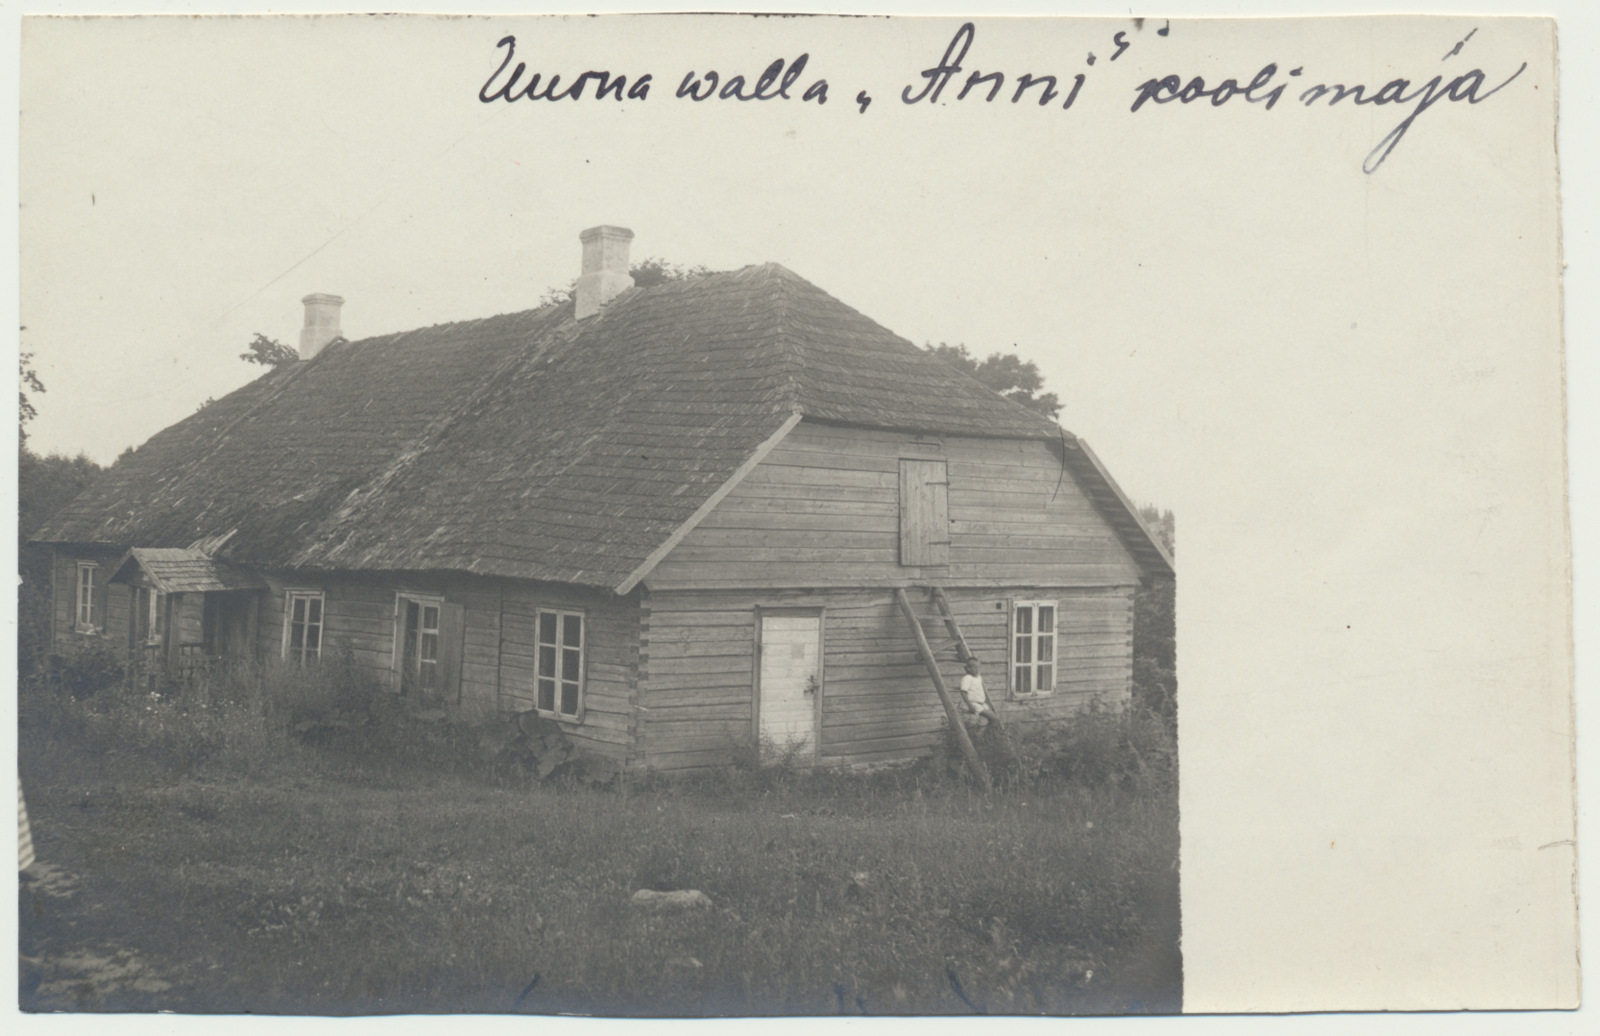 foto Viljandi khk Uusna vald, Anni koolimaja u 1925